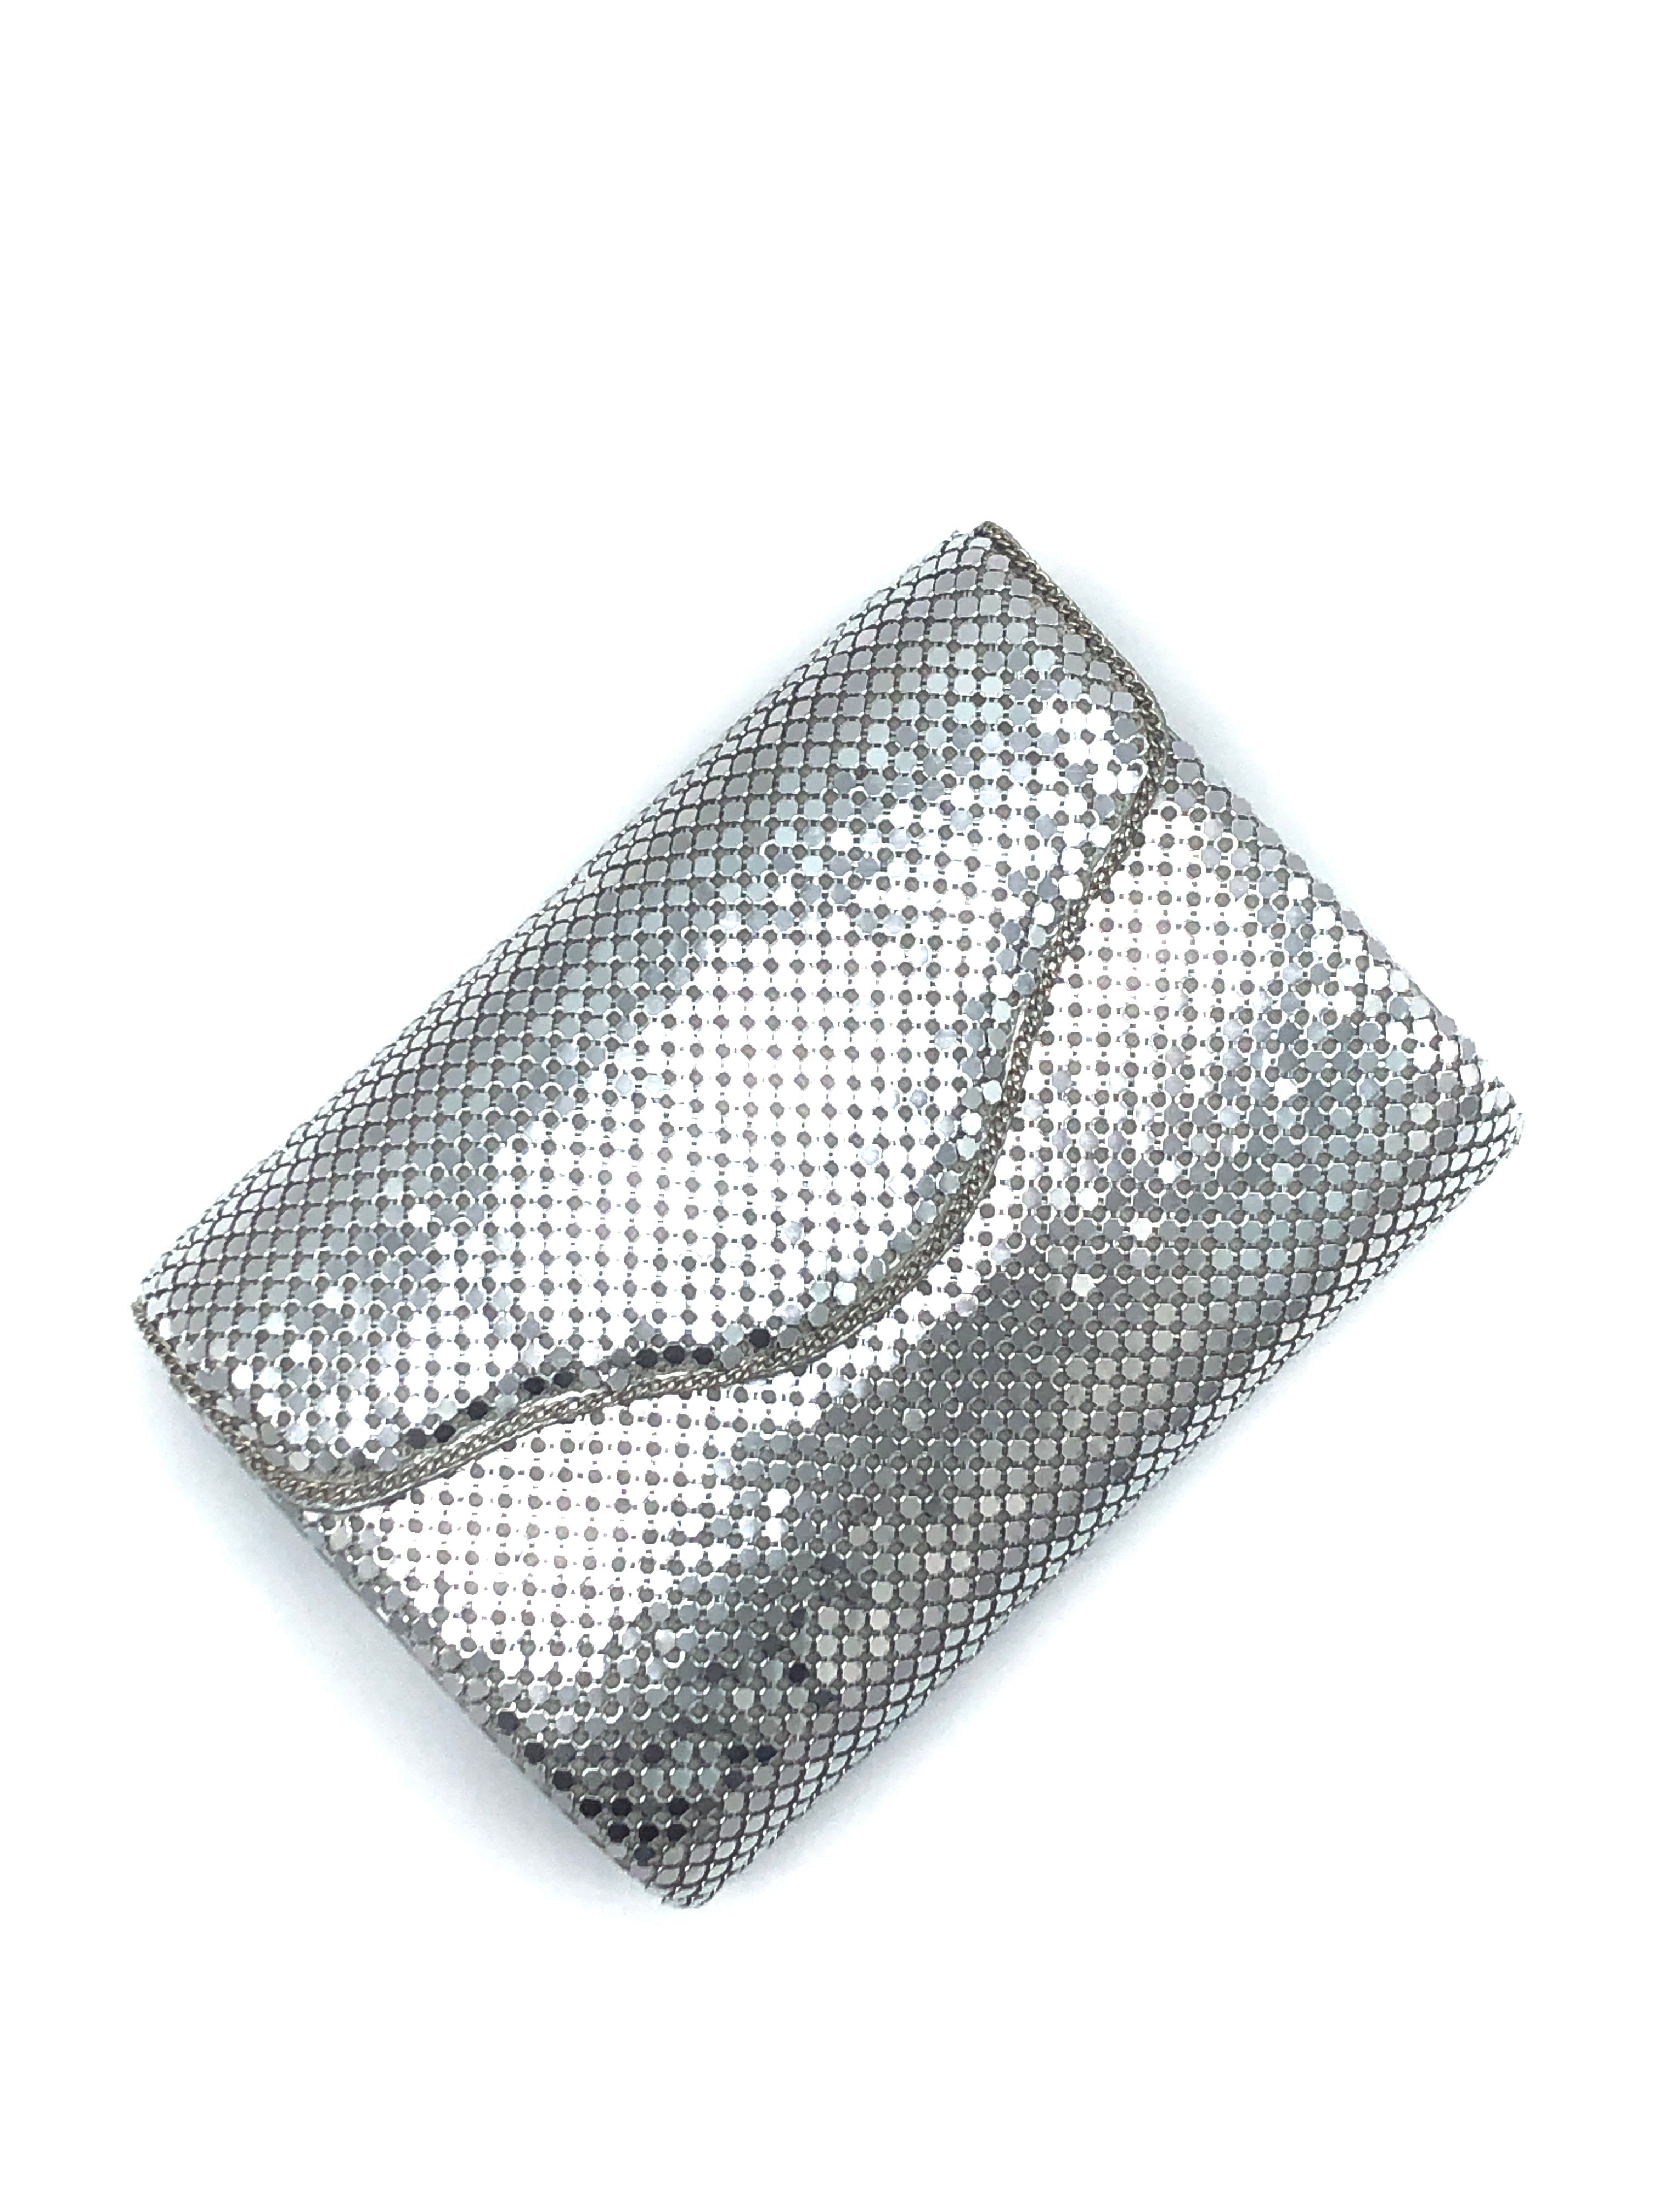 40s metal mesh purse WHITING & DAVIS ivory mesh... - Depop